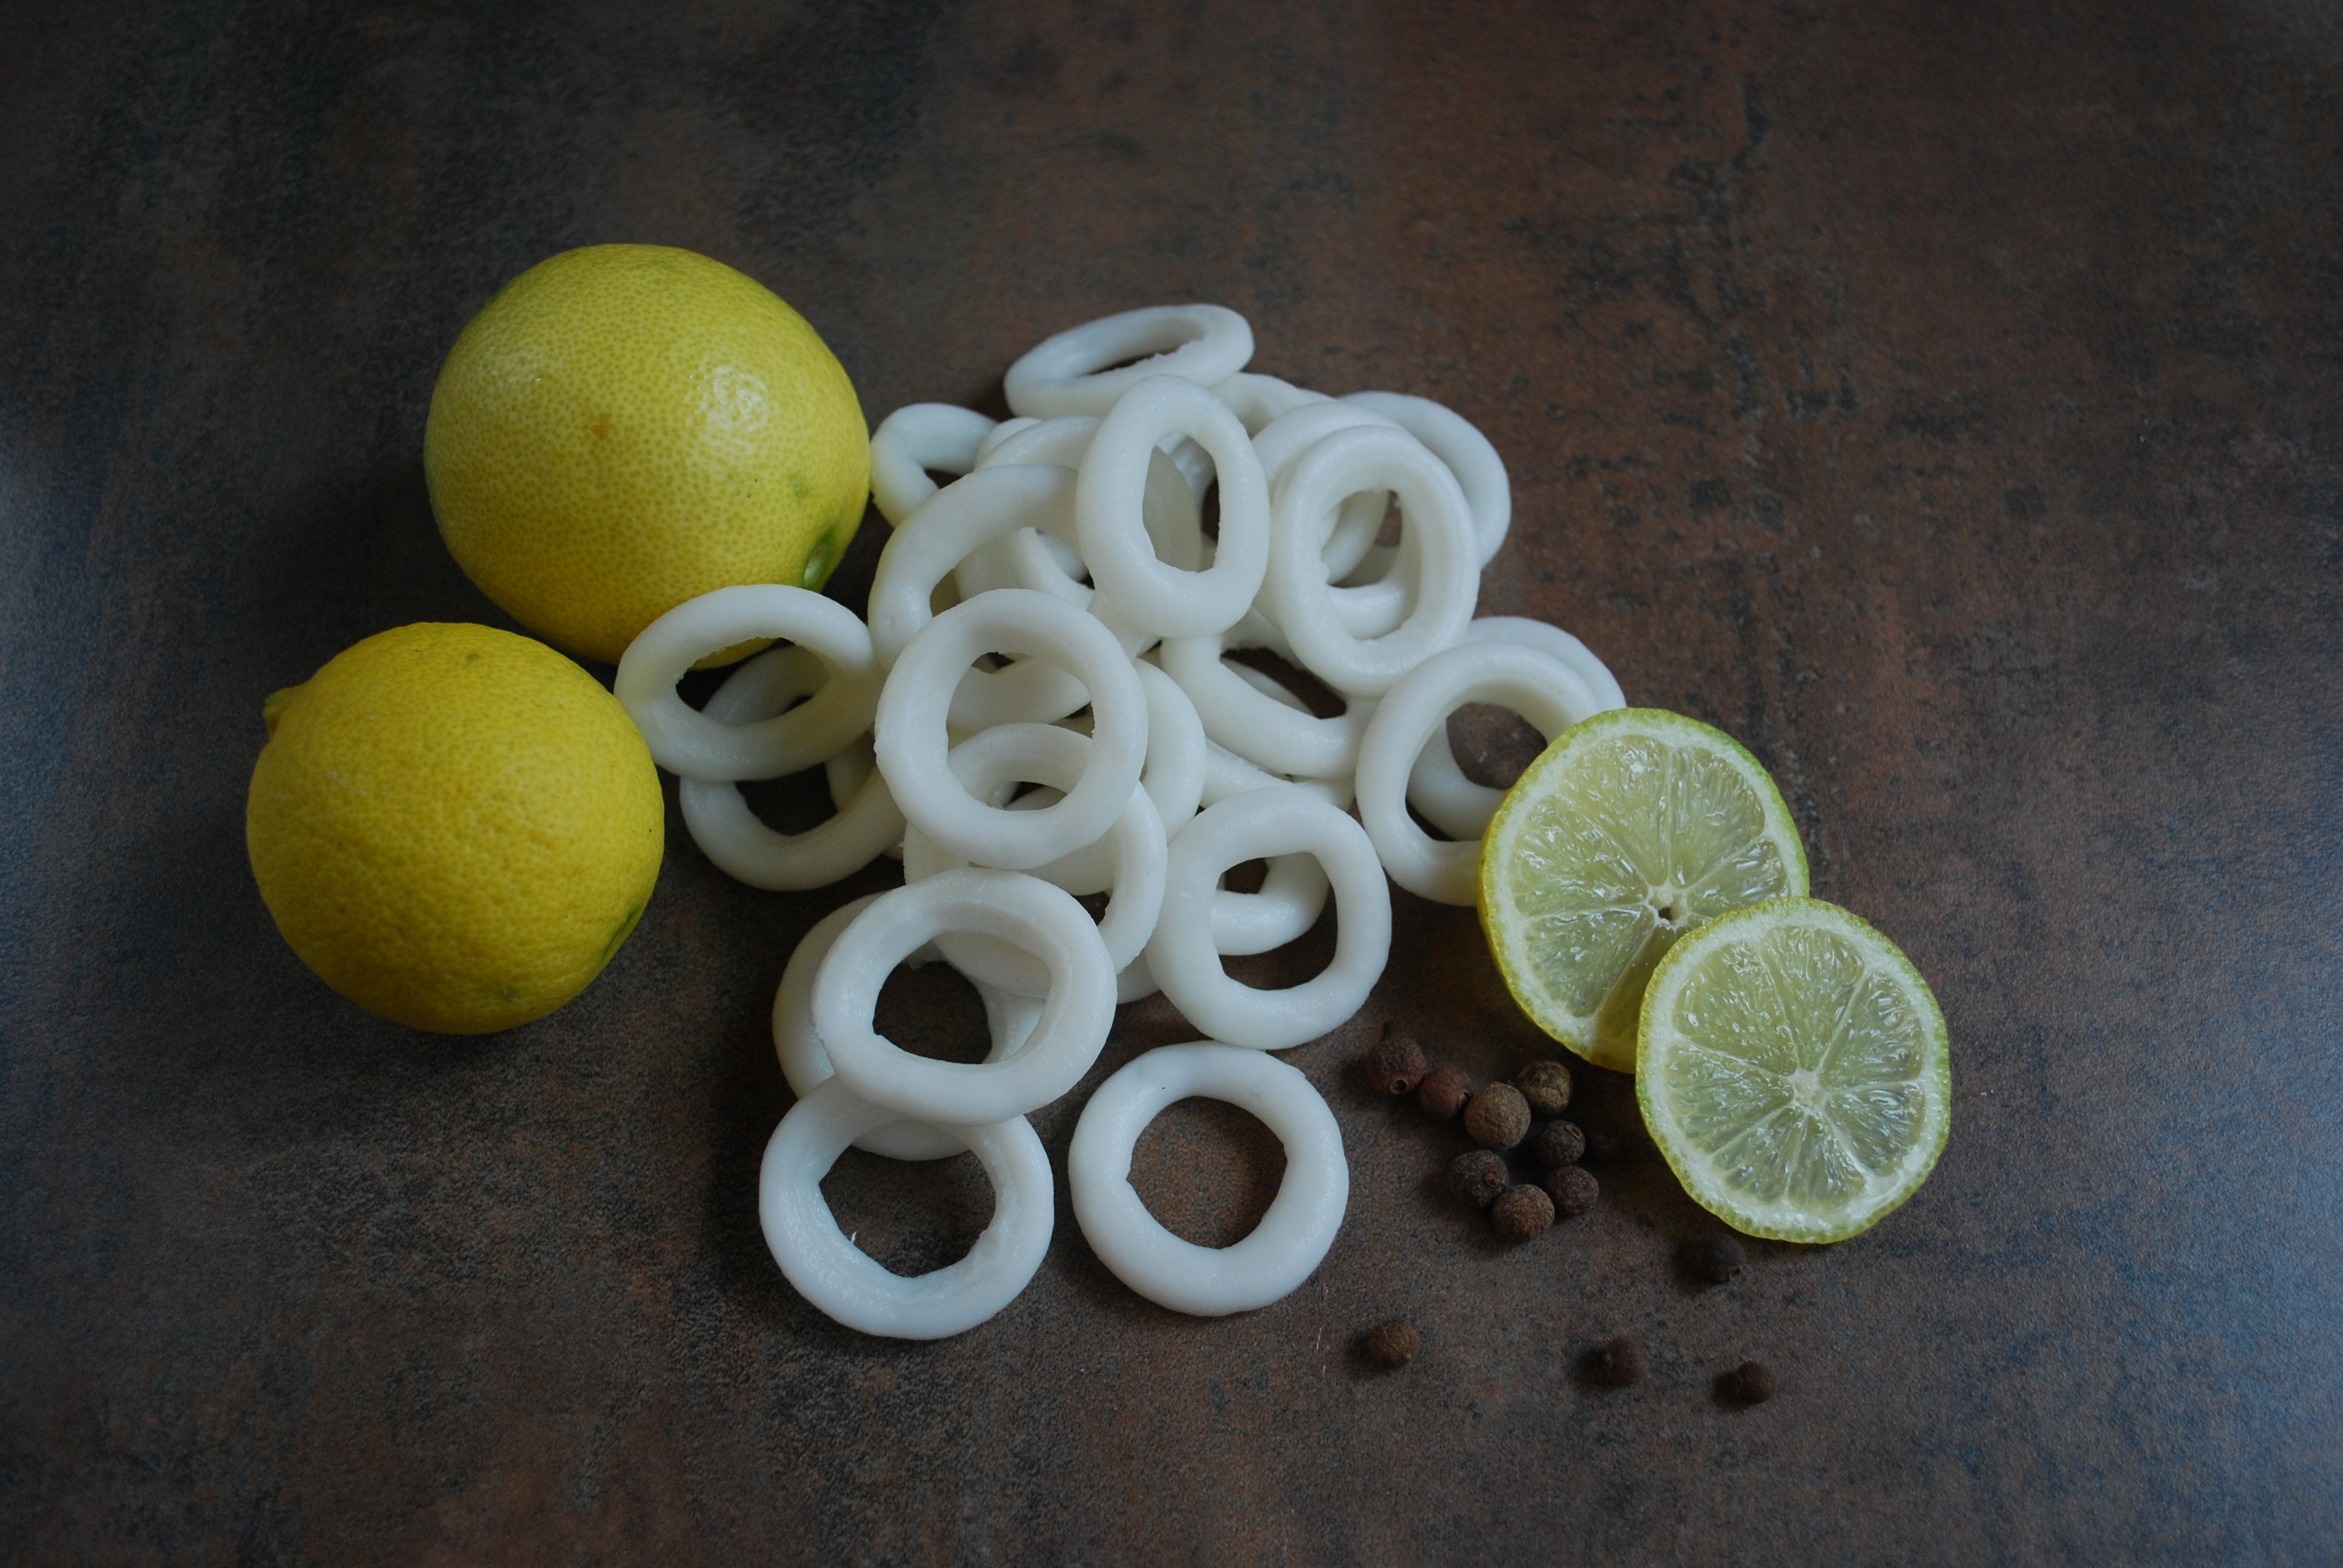 two yellow lemons  beside white sliced fruits